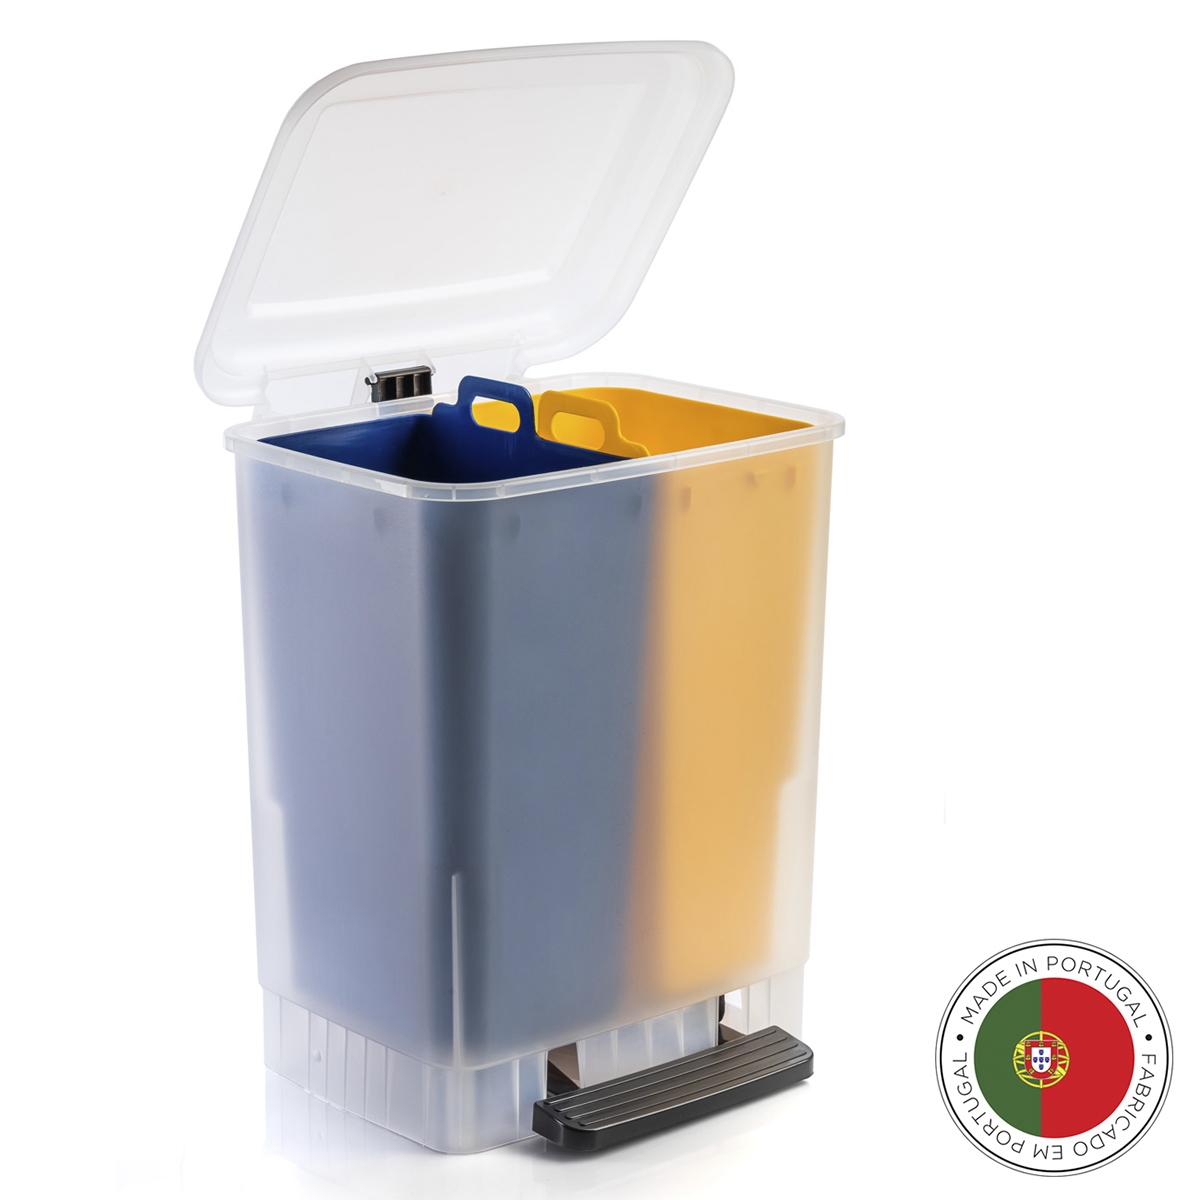 Мусорный бак с педалью ECO yellow blue, 36х30 см, 45 см, 20 л, Пластик, Faplana, Португалия